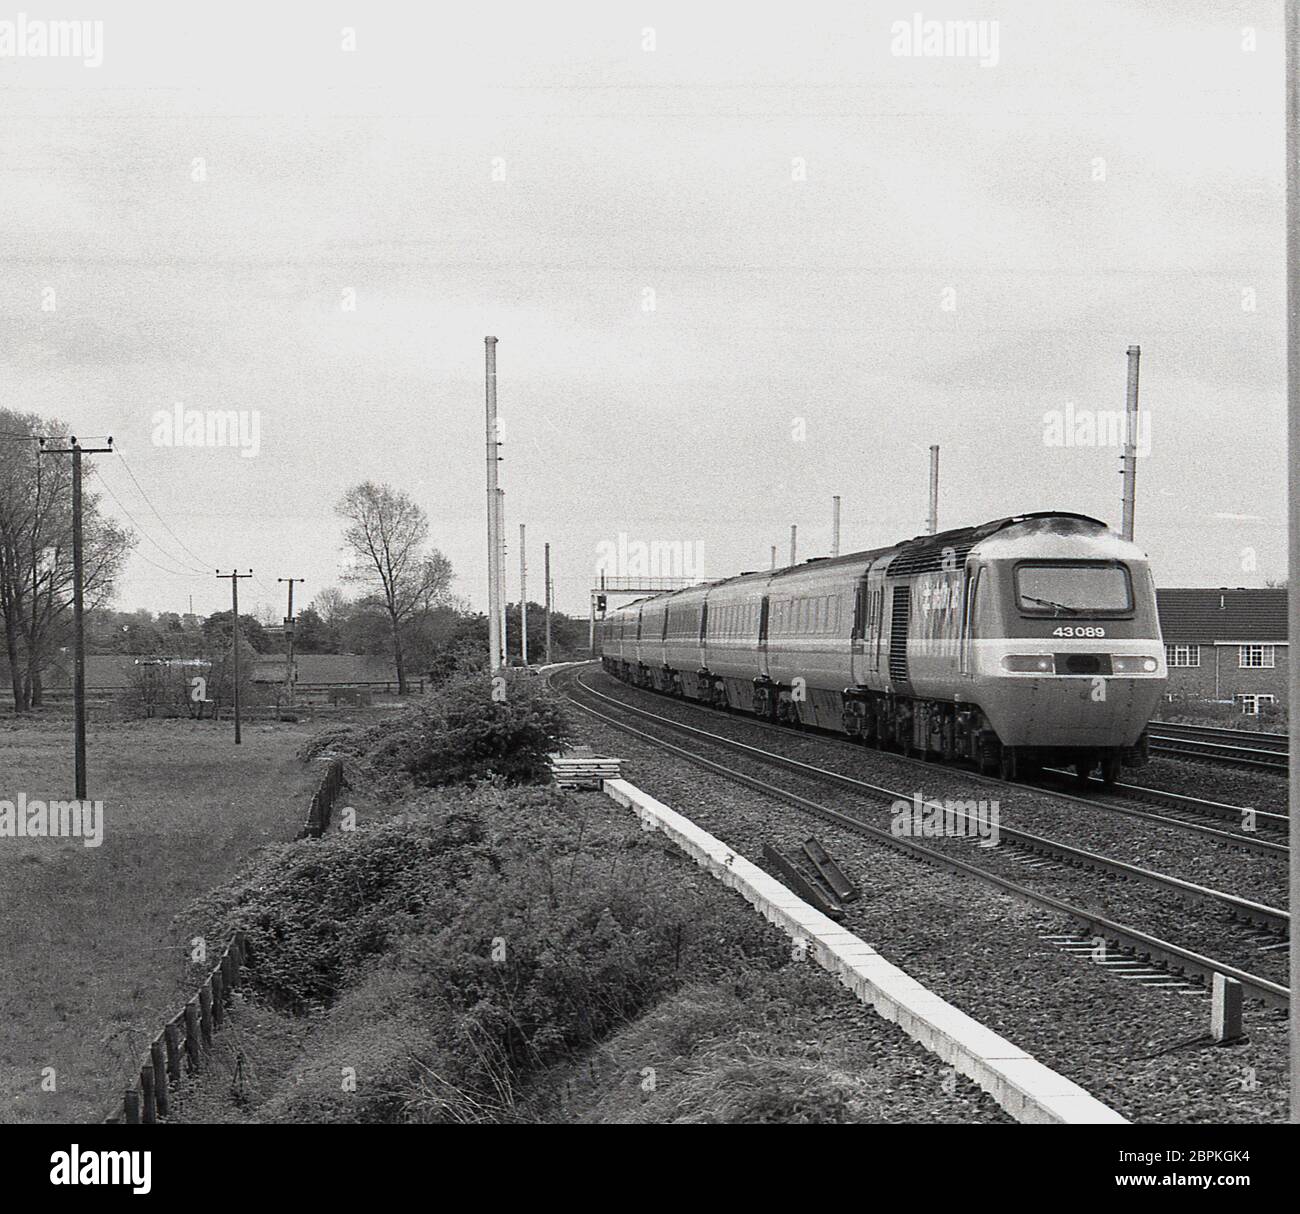 1987, historisch, ein Zug auf der neu elektrifizierten Ostküstenlinie, England, Großbritannien. Von London nach Edinburgh die Strecke ist eine wichtige Route an der Ostküste Großbritanniens und wurde zwischen 1976 und 1991 in zwei Etappen mit Freileitungen elektrifiziert. 1985 begann der Bau in der zweiten Phase und galt als "längste Baustelle der Welt" über eine Strecke von mehr als 250 Meilen. Die Strecke nach York wurde 1989 fertiggestellt. Stockfoto